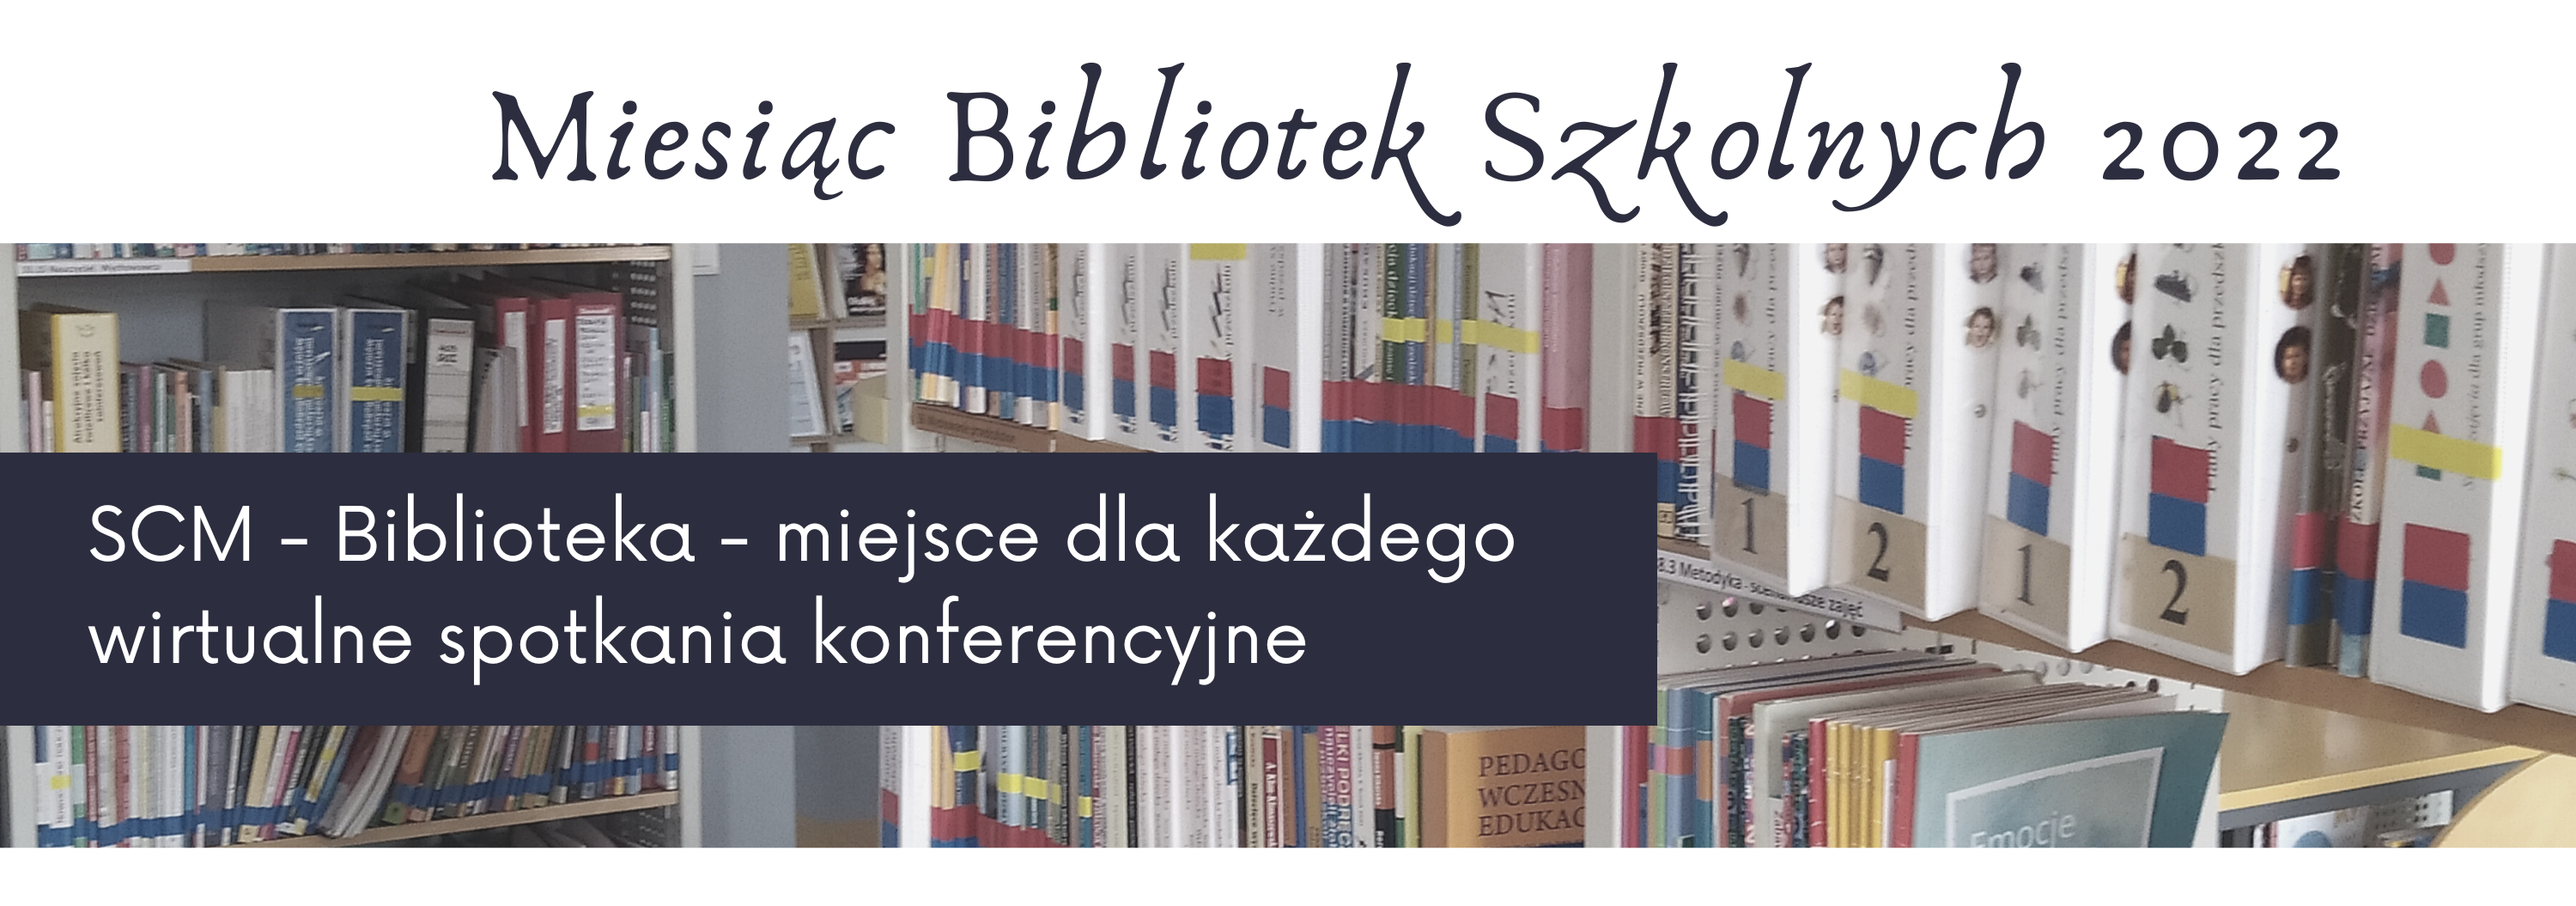 Konferencja SCM-Biblioteka - miejsce dla